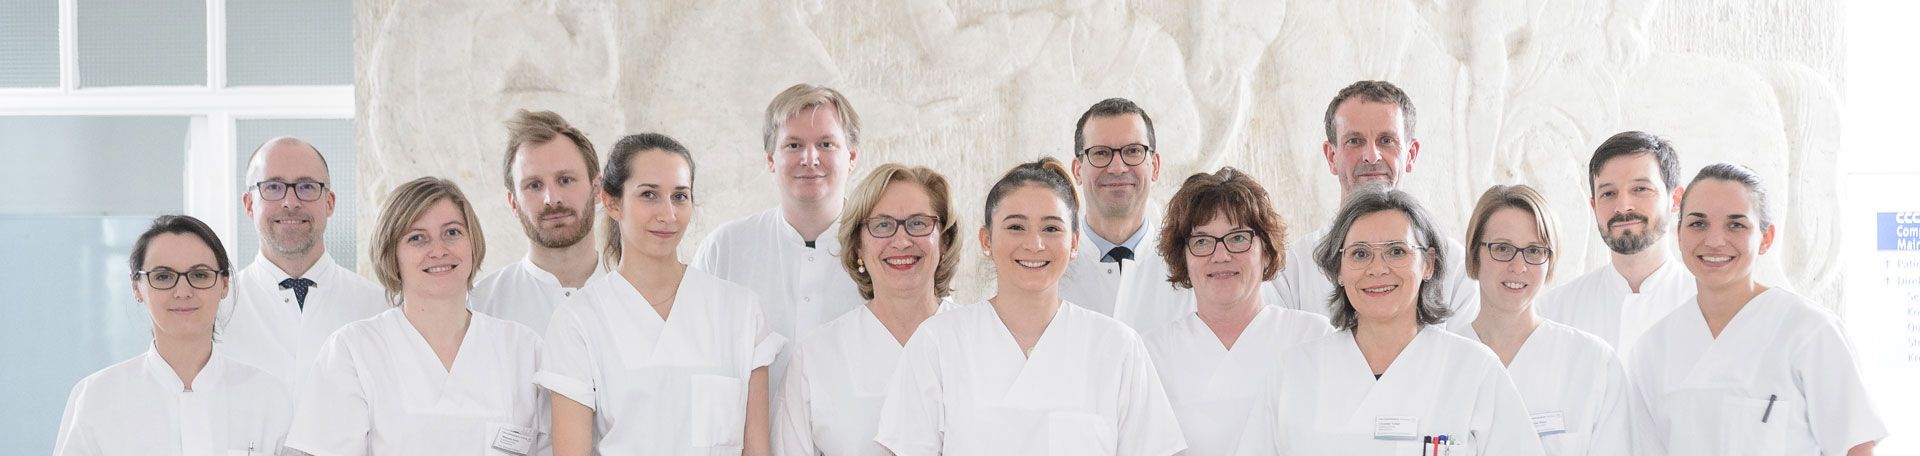 Gruppenfoto: Das Team der Interdisziplinären Onkologischen Tagesklinik